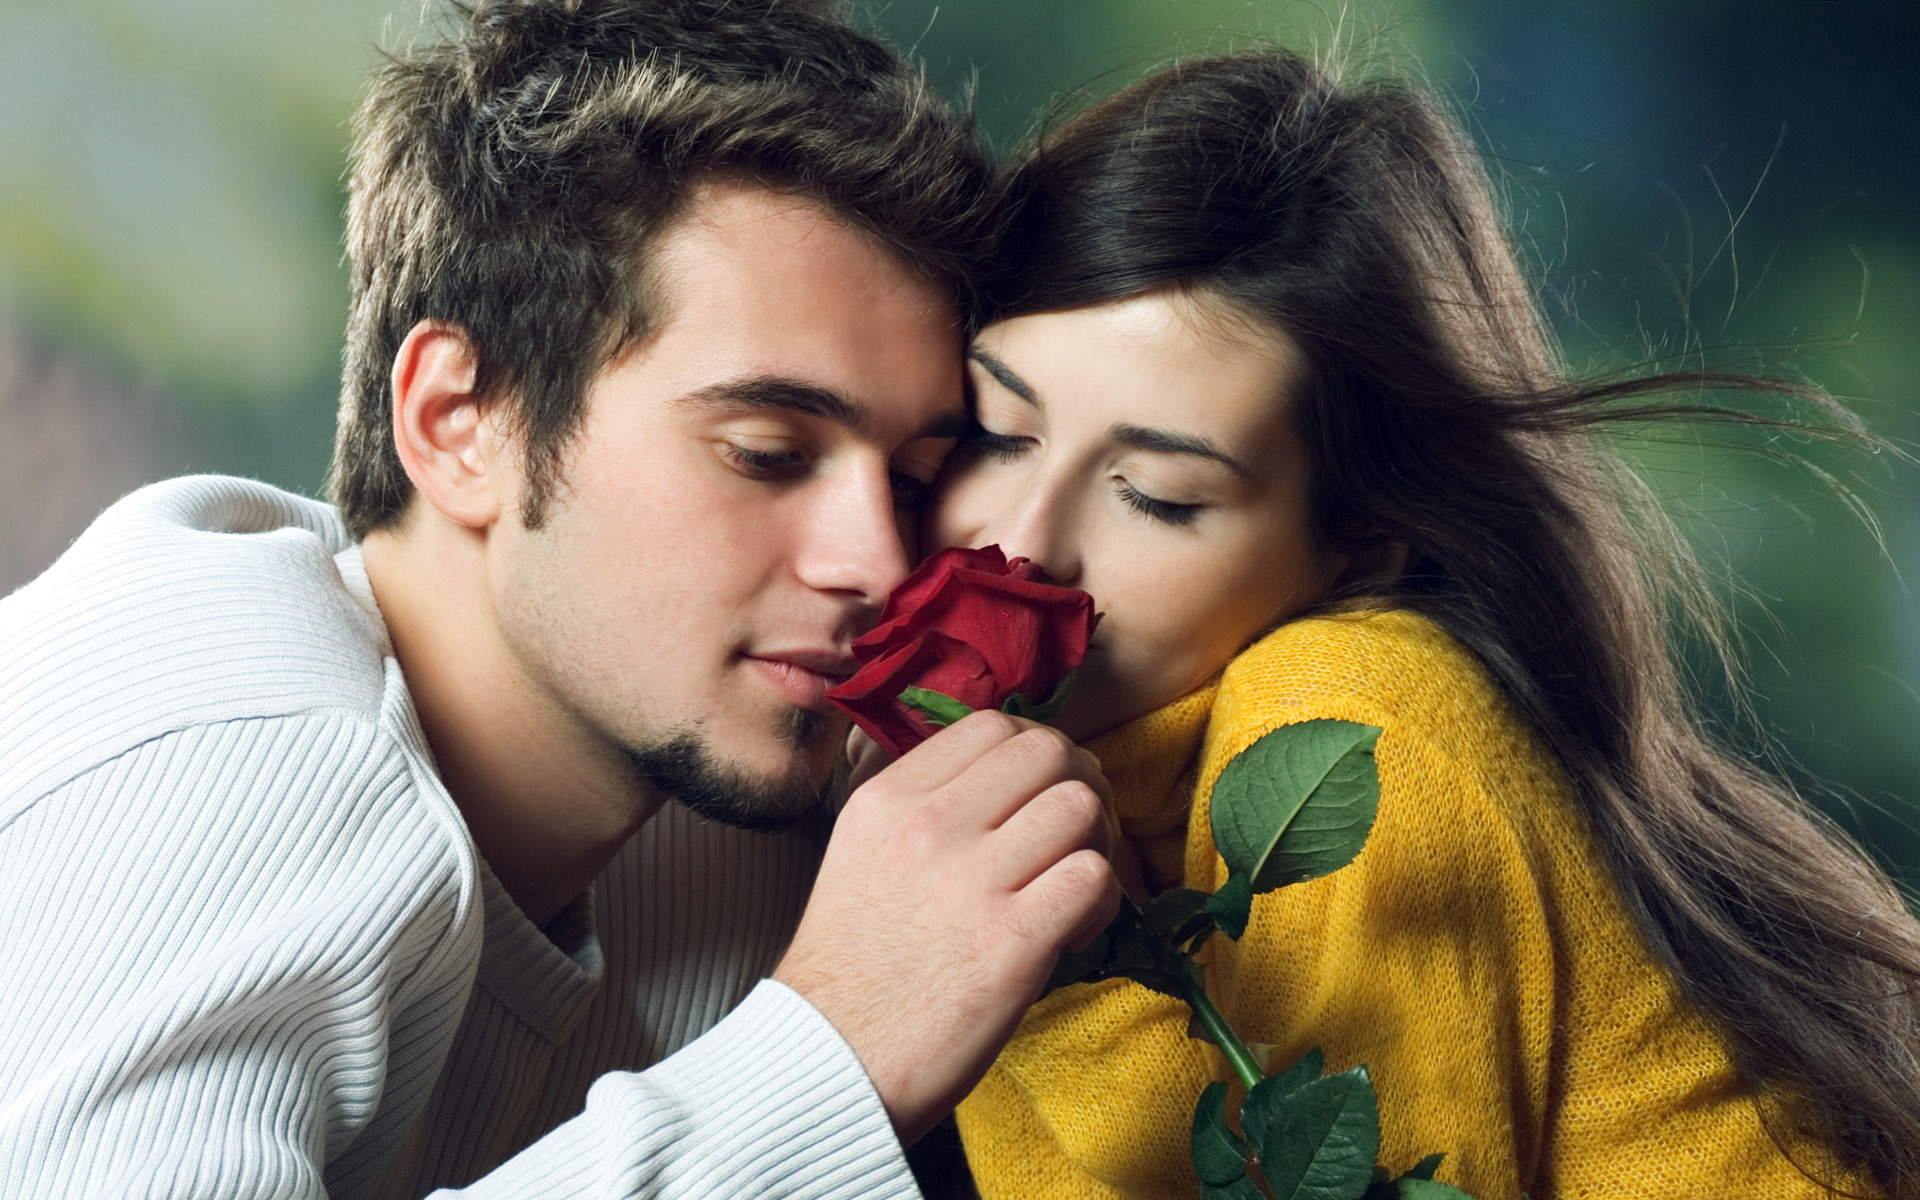 guy, Girl, Love, Rose Wallpaper